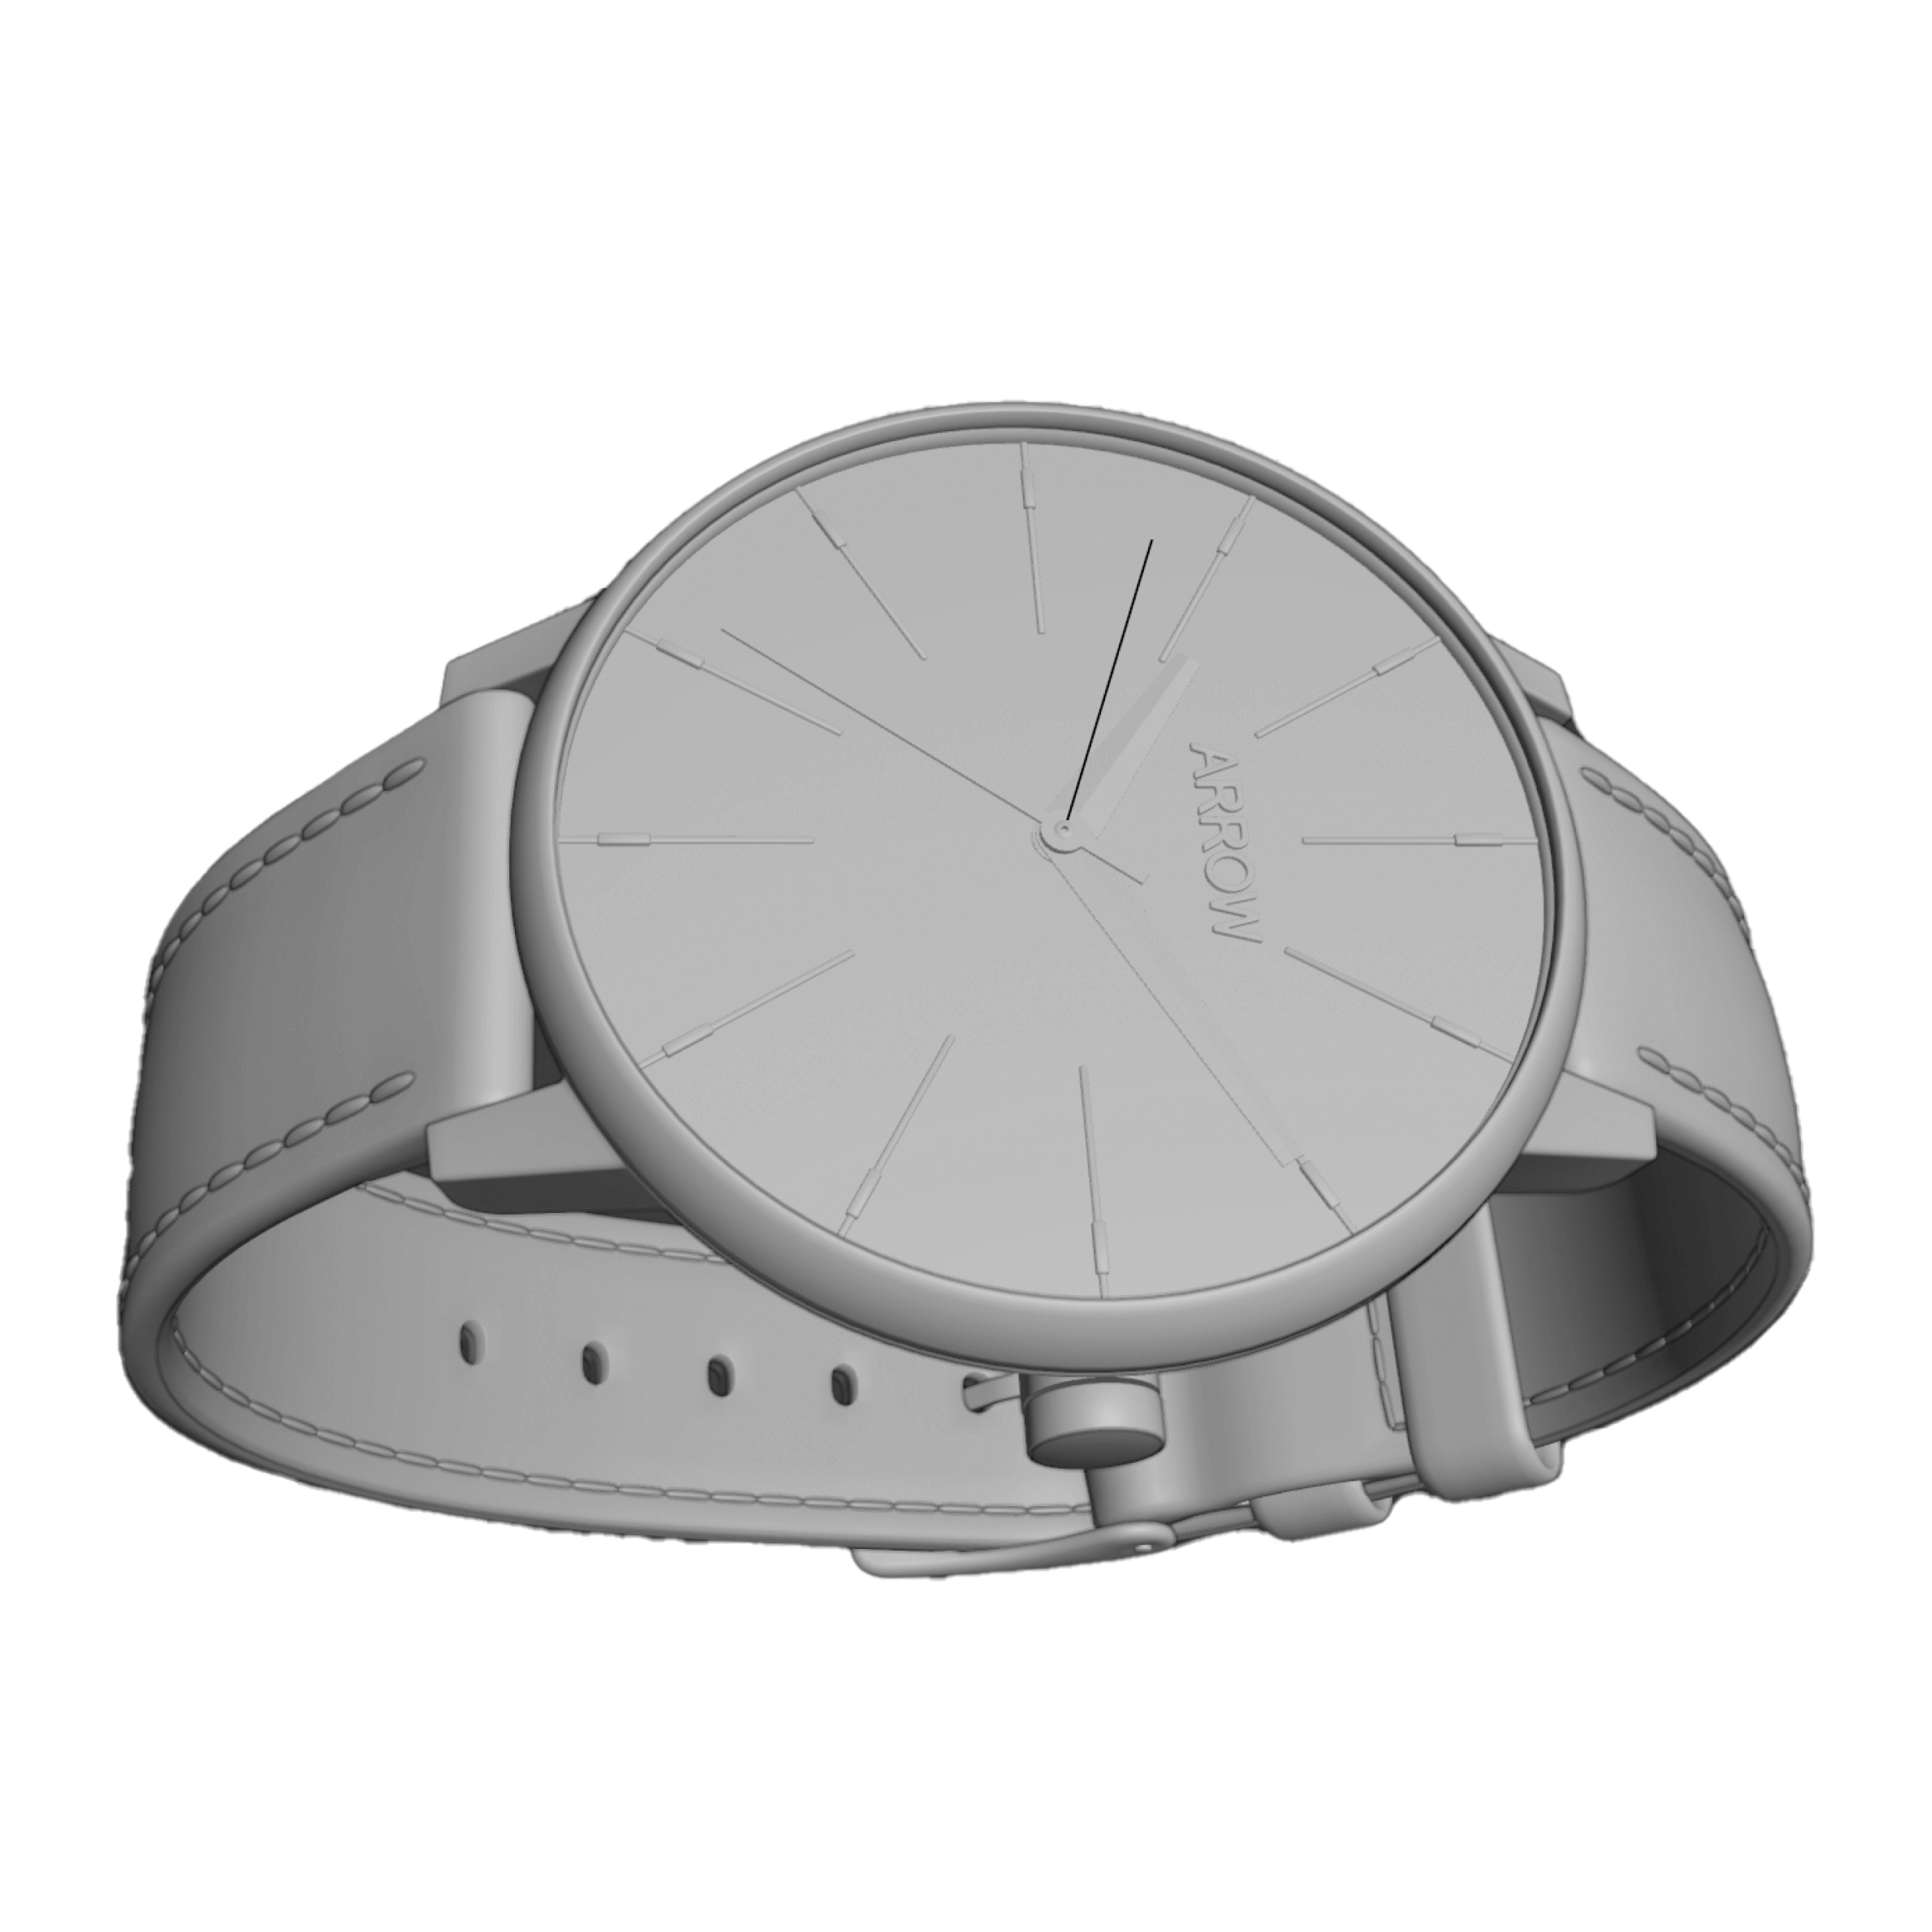 A 3D render of a watch